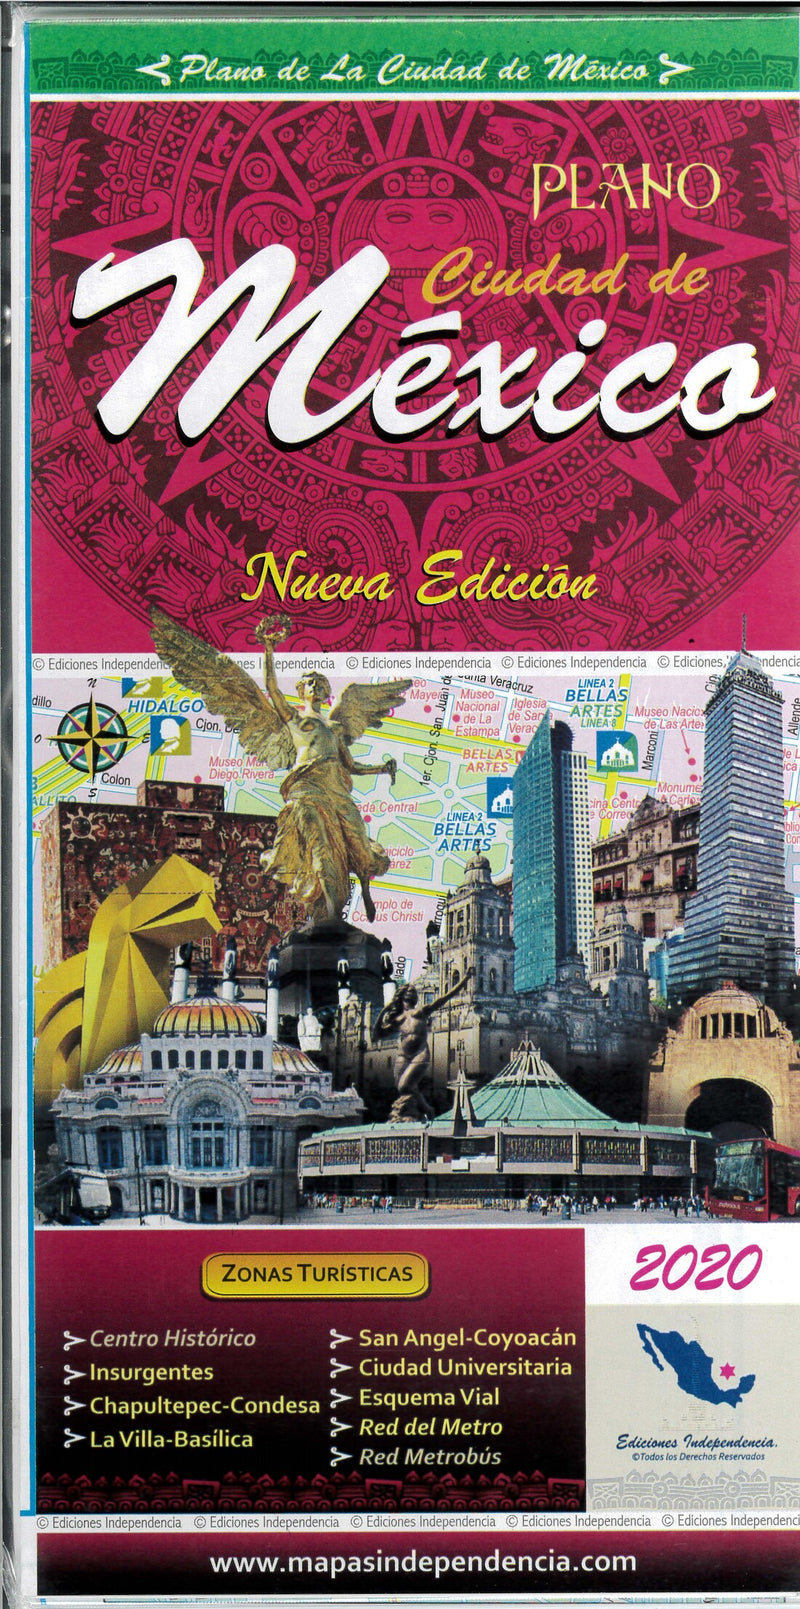 Plano: Ciudad De Mexico Map